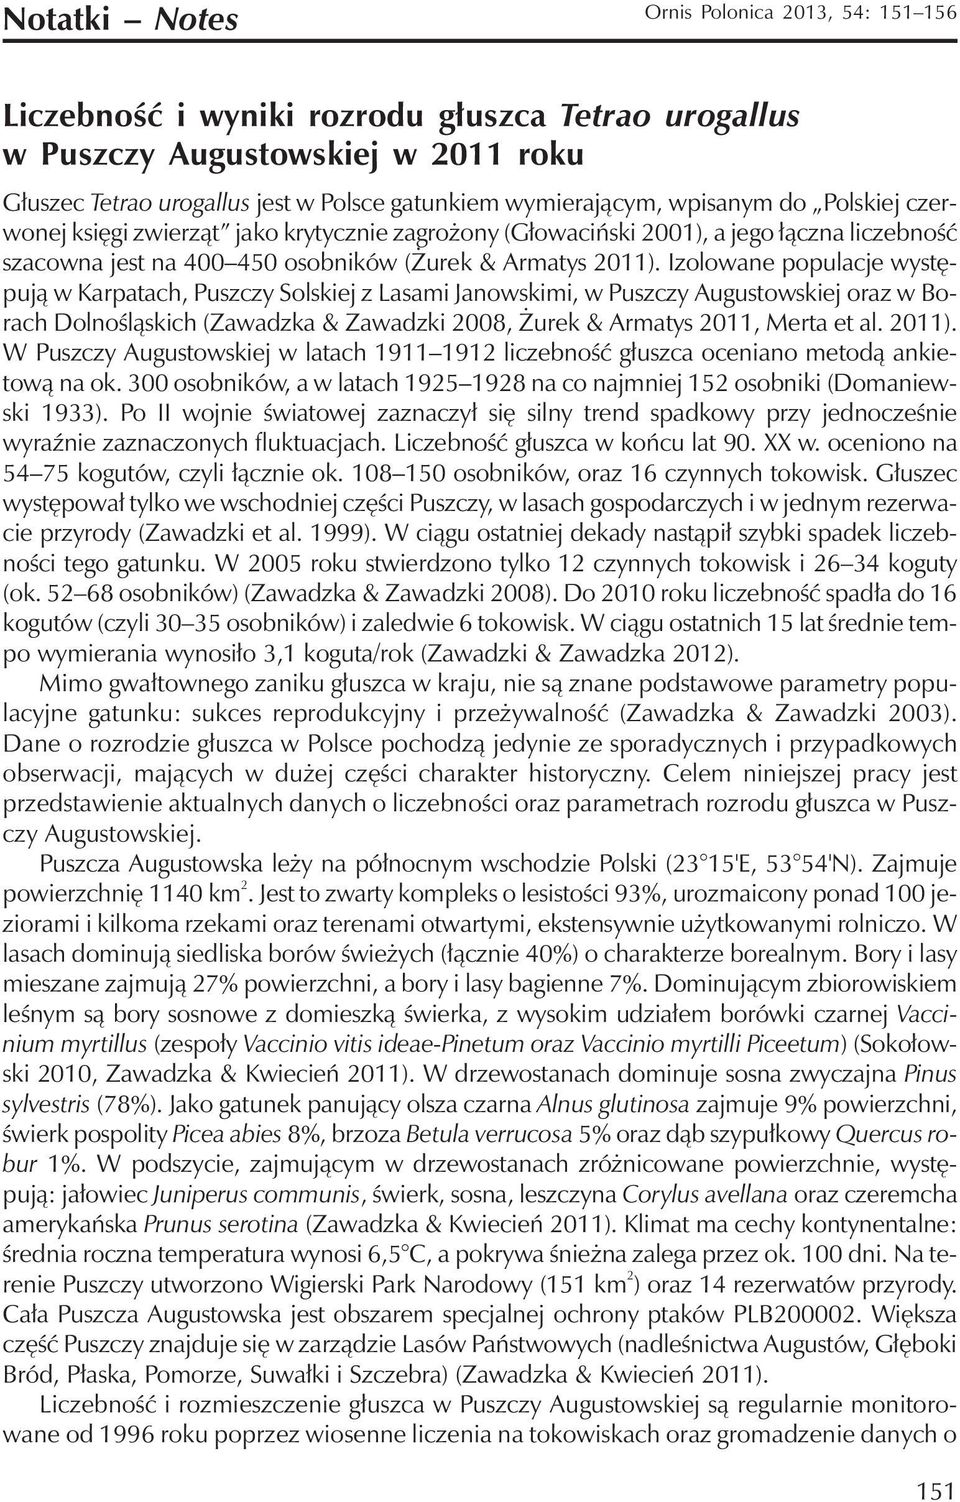 Izolowane populacje występują w Karpatach, Puszczy Solskiej z Lasami Janowskimi, w Puszczy Augustowskiej oraz w Borach Dolnośląskich (Zawadzka & Zawadzki 2008, Żurek & Armatys 2011, Merta et al.